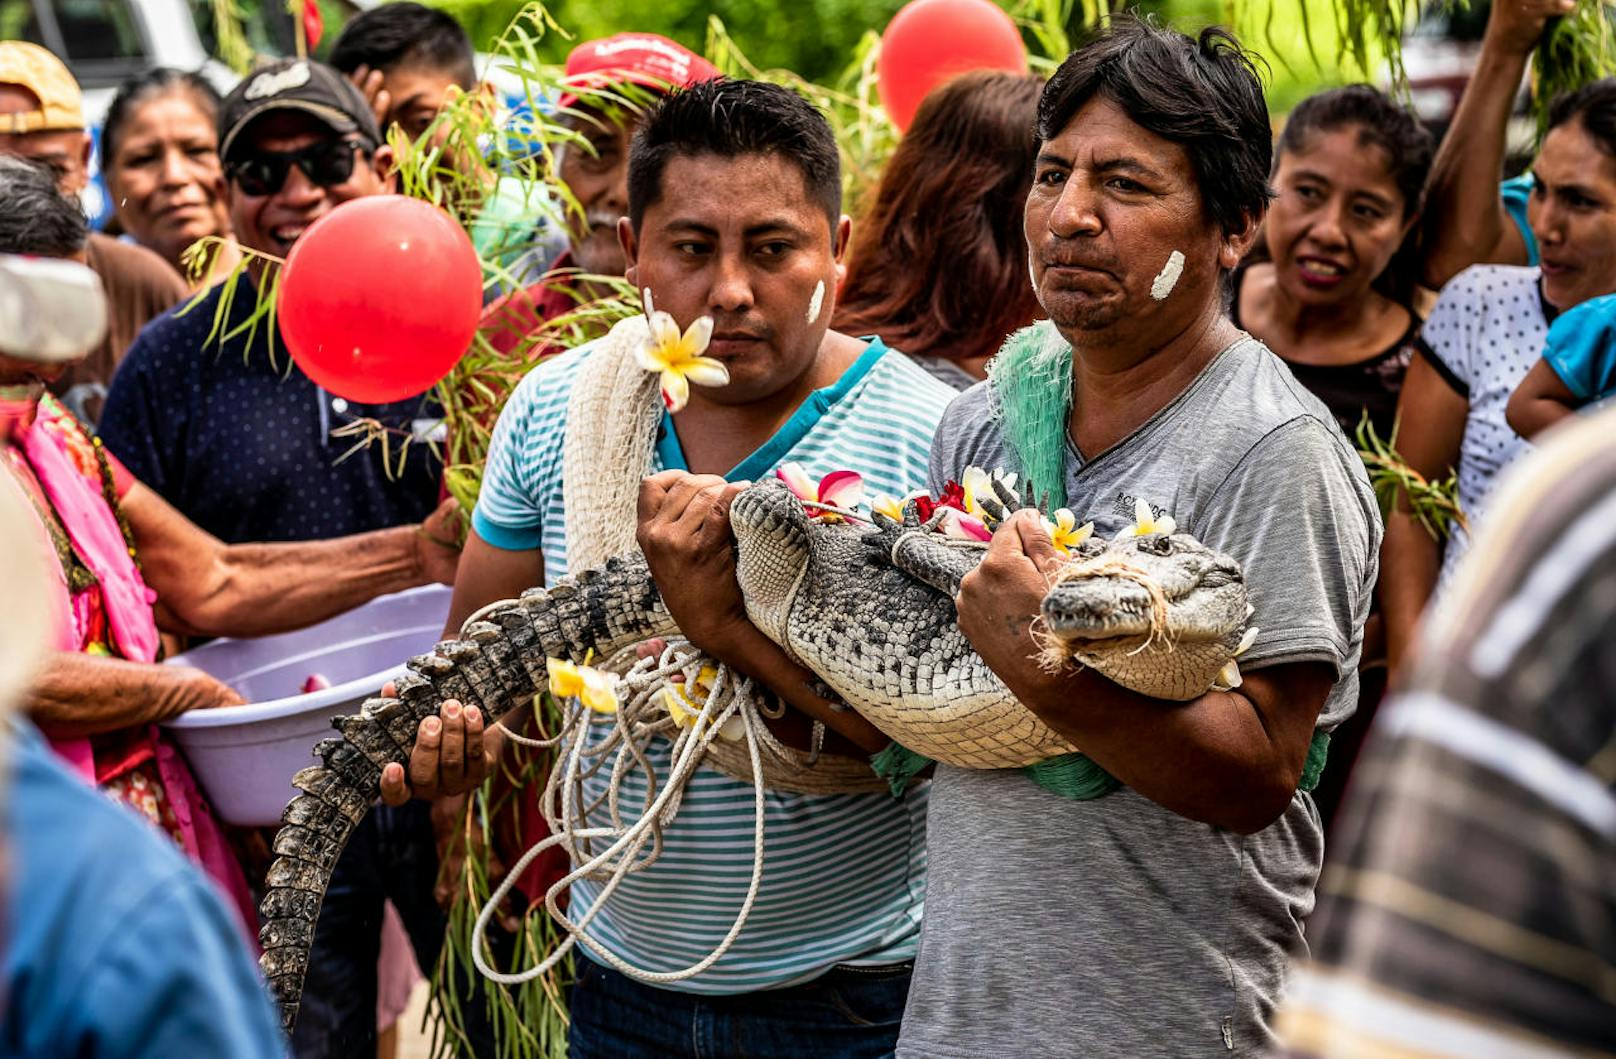 Victor Aguilar Ricardez aus dem Dorf San Pedro heiratete seine ungewöhnliche Braut: Ein kleines Krokodil. Was soll der seltsame Brauch? Es geschieht zu Feierlichkeiten zu Ehren des Heiligen San Pedro und soll den Fischern einen reichen Fang bescheren.